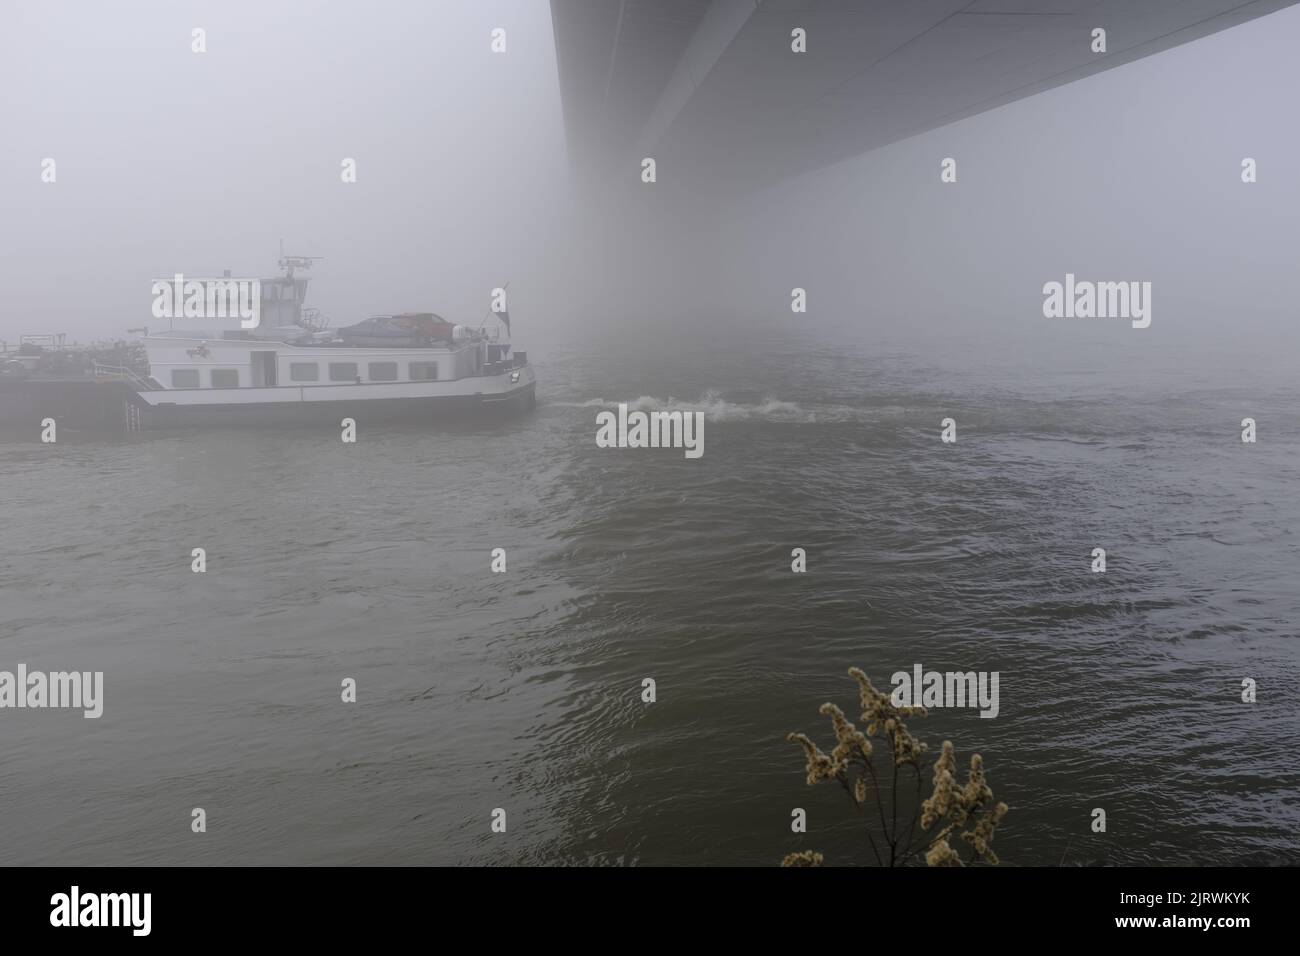 16.12.2021, Duesseldorf, Nordrhein-Westfalen, Deutschland - Frachtschiff auf dem Rhein in Duesseldorf bei Nebel unter der Oberkasseler Bruecke Stock Photo